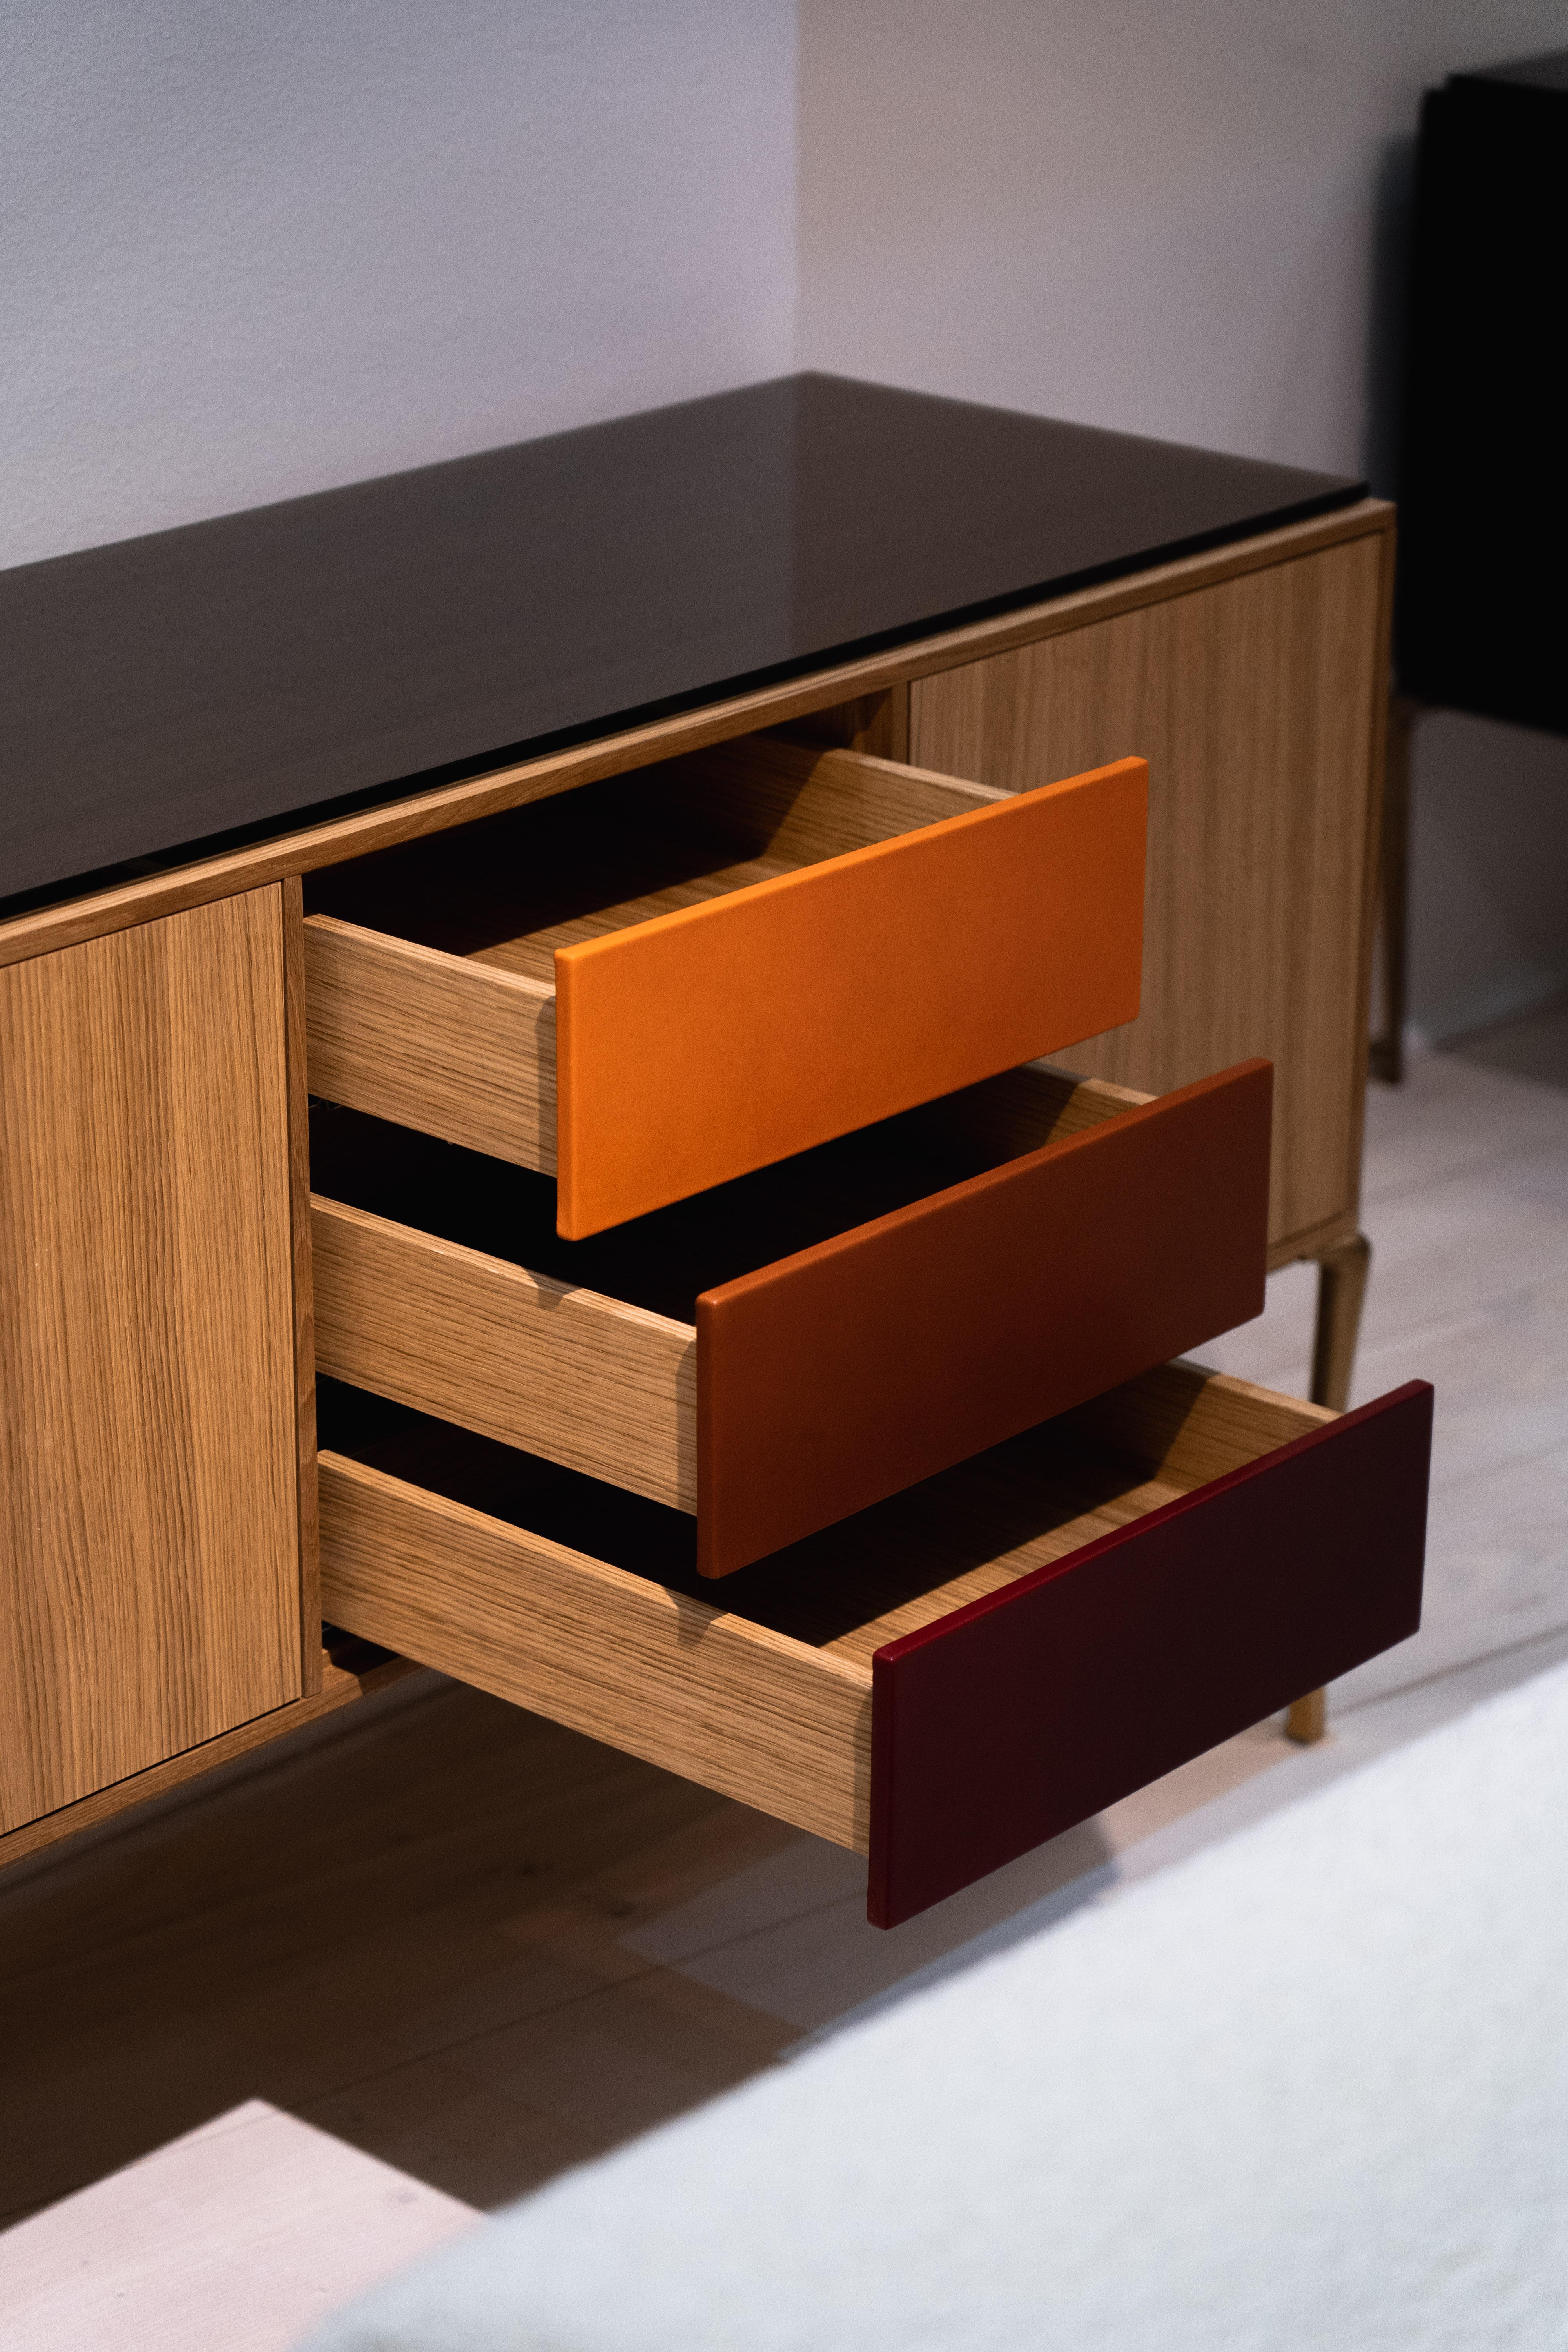 Die Copenhagen Console von Tom Nybroe wurde für das Esszimmer, das Arbeitszimmer oder jeden anderen Raum entworfen, der ein schönes Möbelstück benötigt, das Platz für die Dinge bietet, die man in der Nähe braucht.

Die Kopenhagen-Konsole ist ein